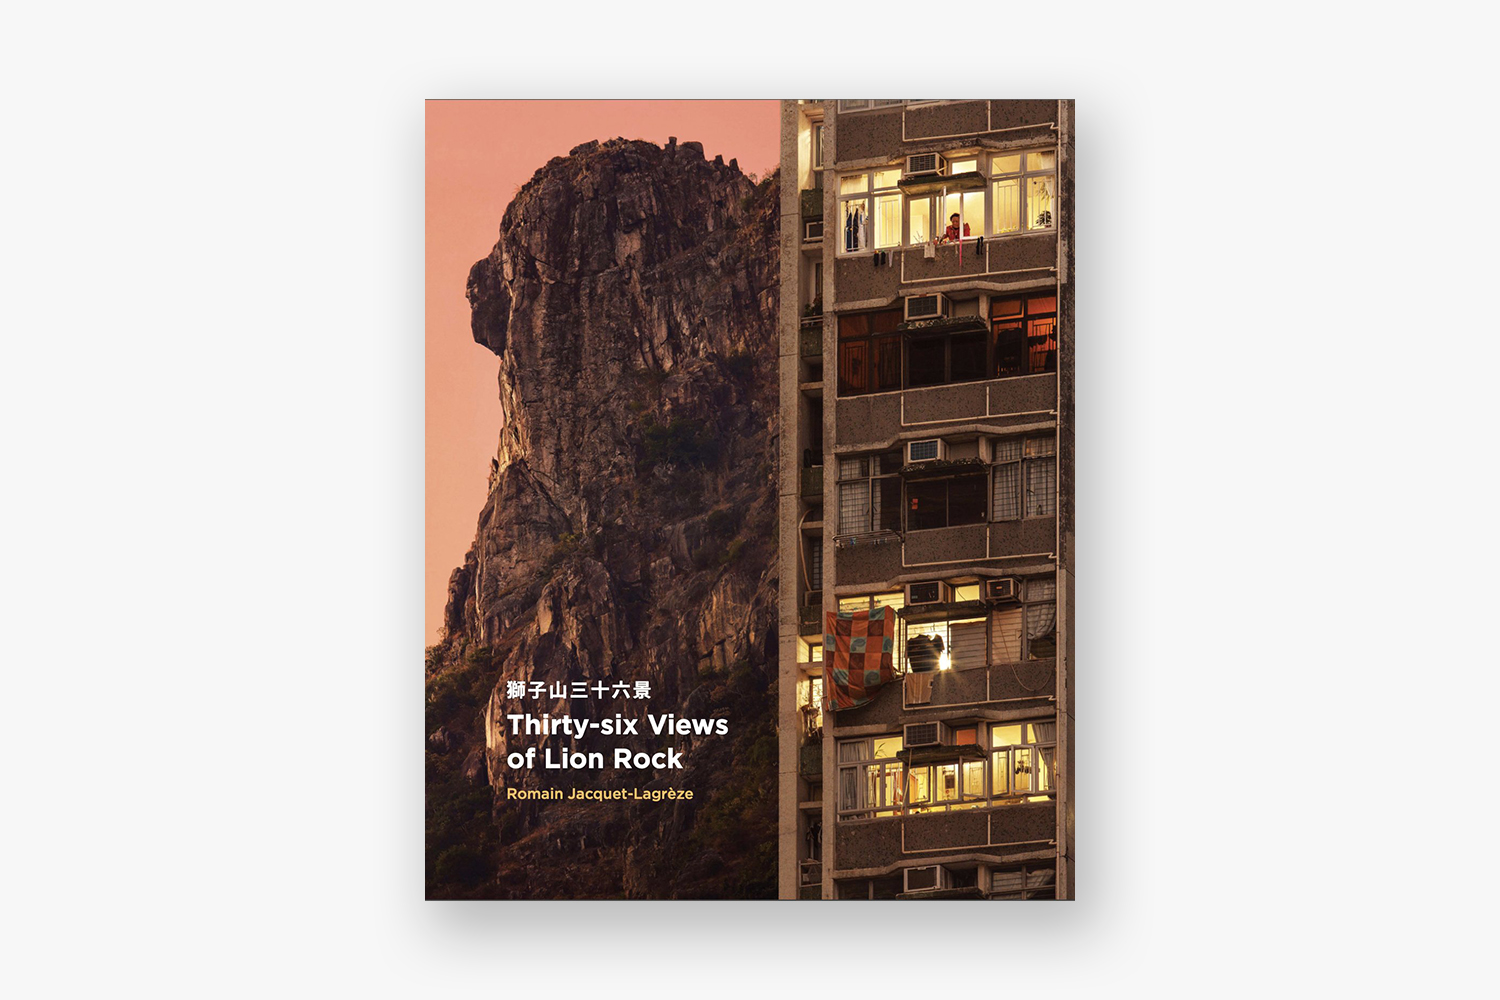 36 views cover - 36 Views Of Lion Rock - Book |  - 36 Views Of Lion Rock 獅子山三十六景 - Romain Jacquet-Lagréze